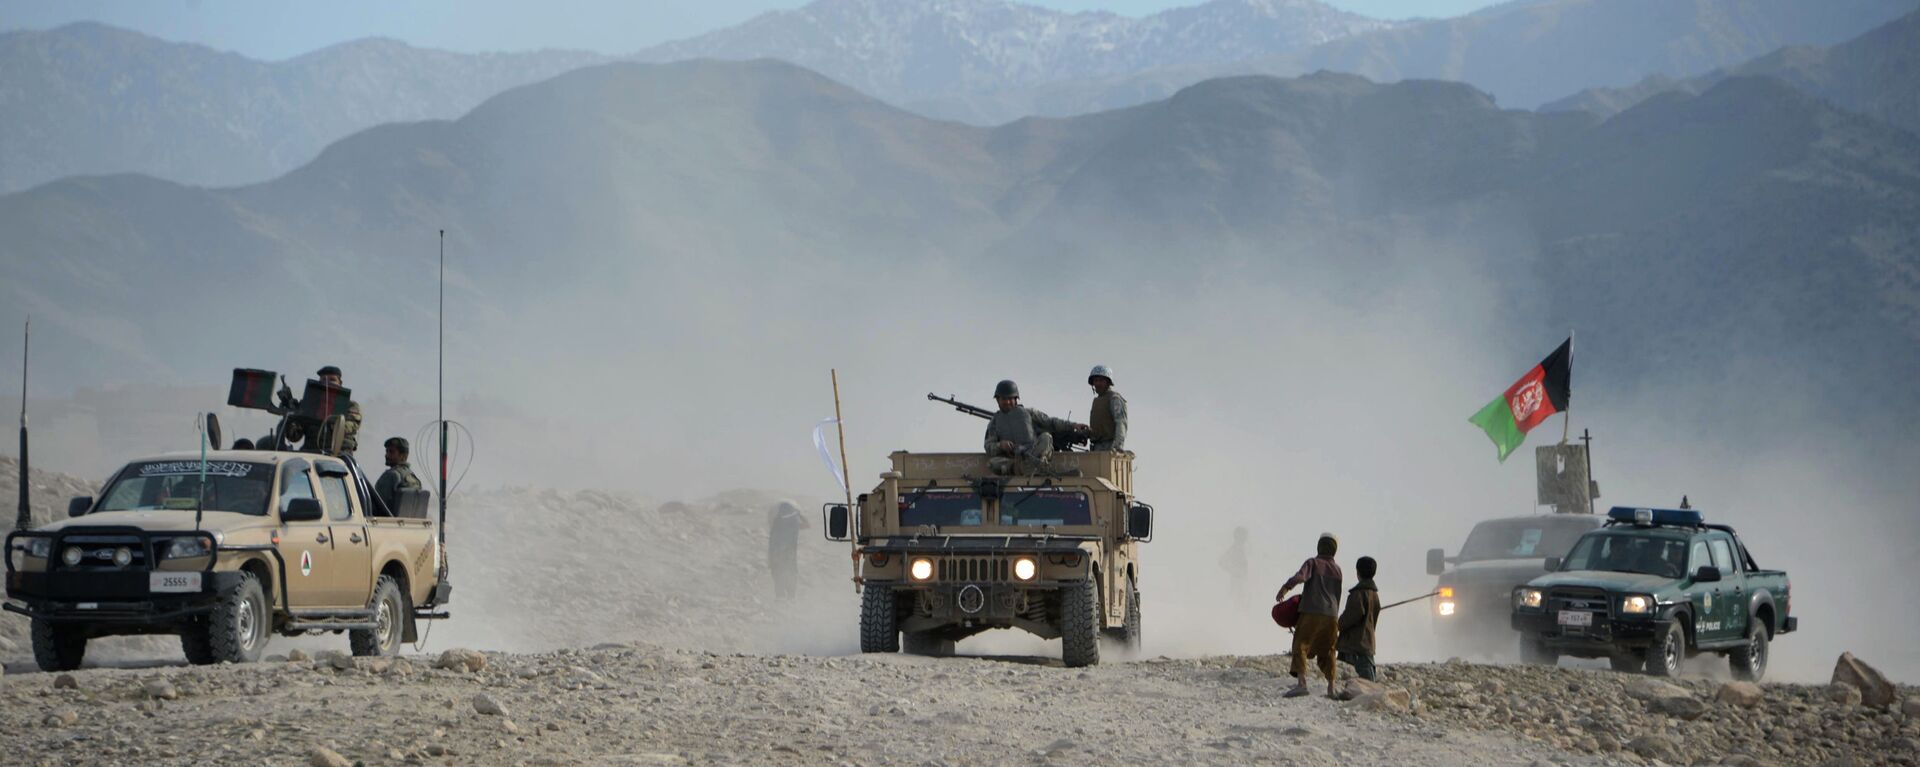 حمله طالبان به یک پوسته در سرپل؛ 14 نیروی امنیتی کشته و زخمی شدند  - اسپوتنیک افغانستان  , 1920, 03.02.2021